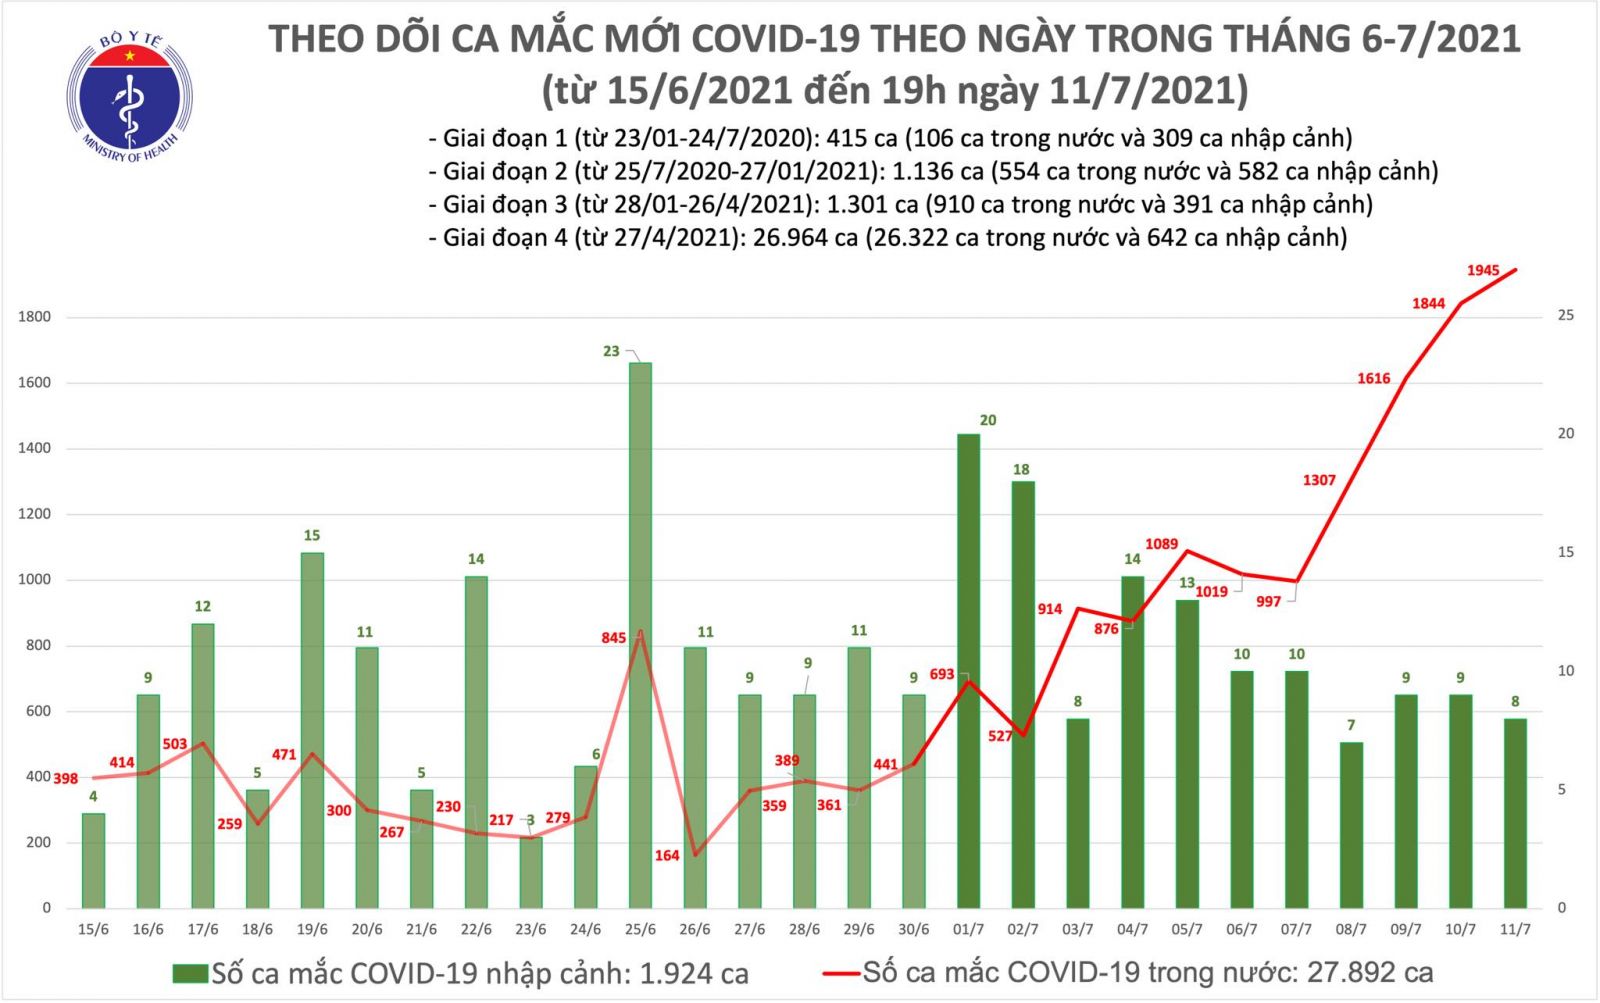 Tối 11/7: Có thêm 713 ca COVID-19 mới, tổng số mắc trong ngày là 1.953 ca